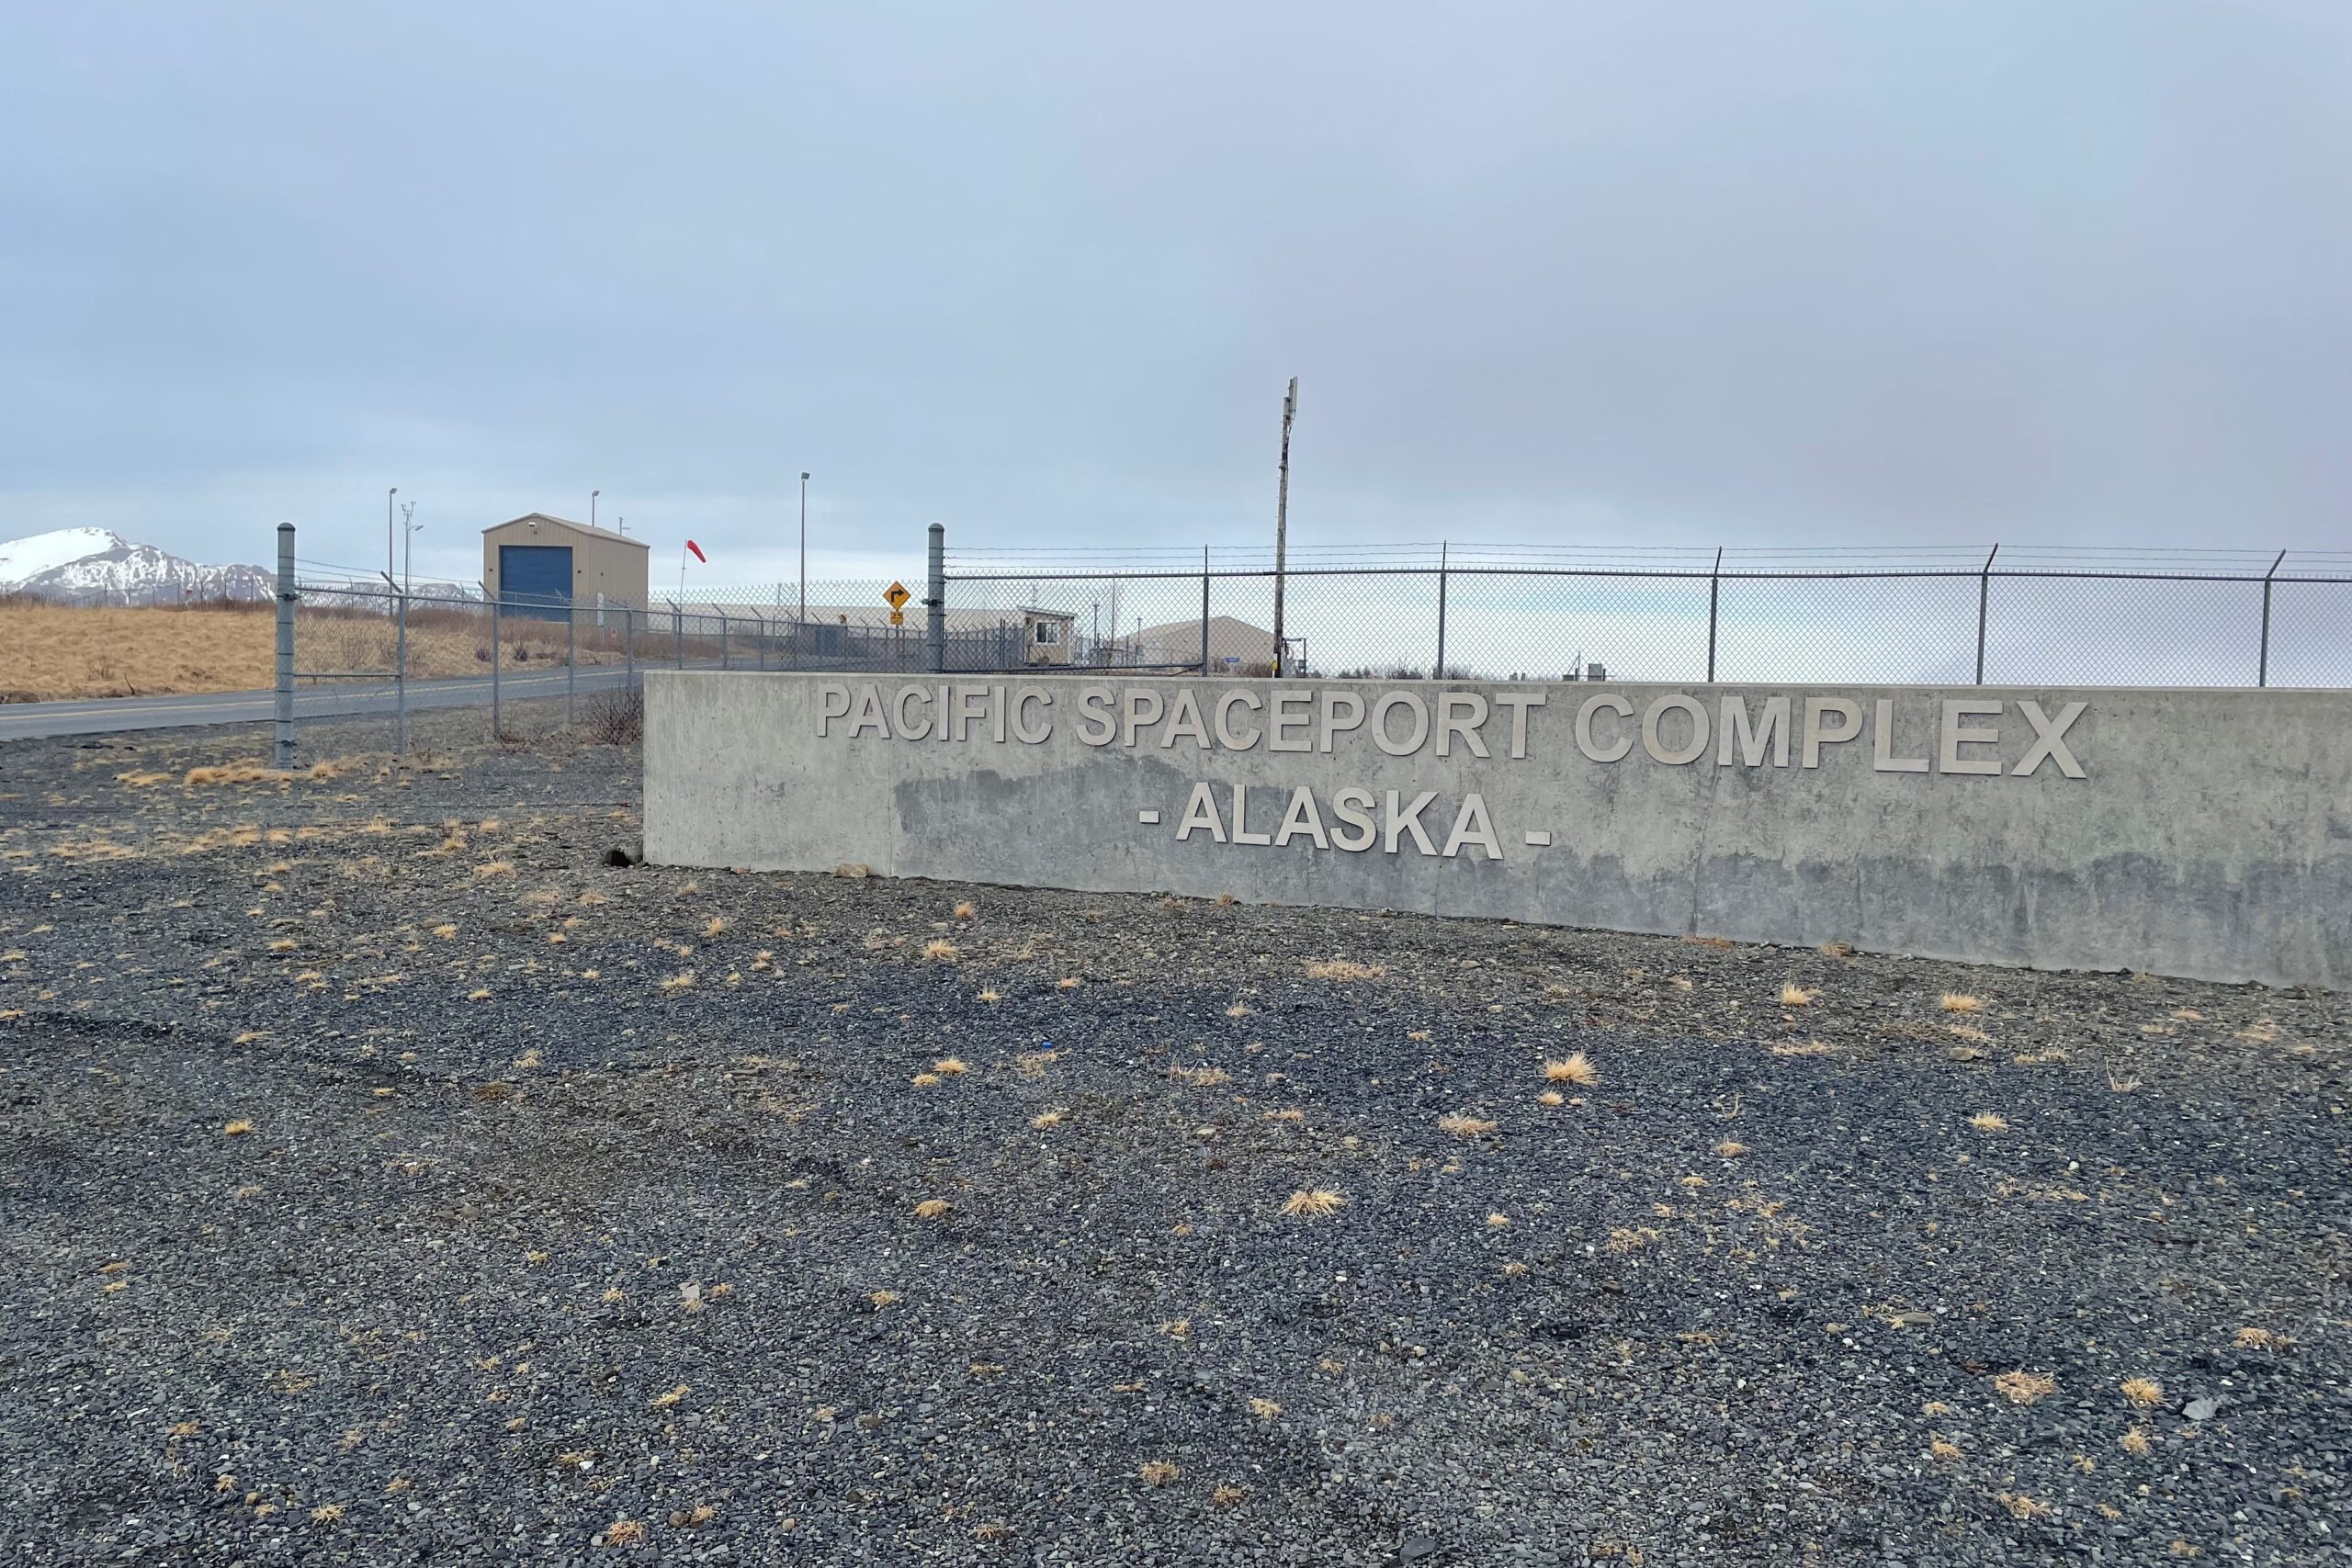 a Kodiak spaceport sign